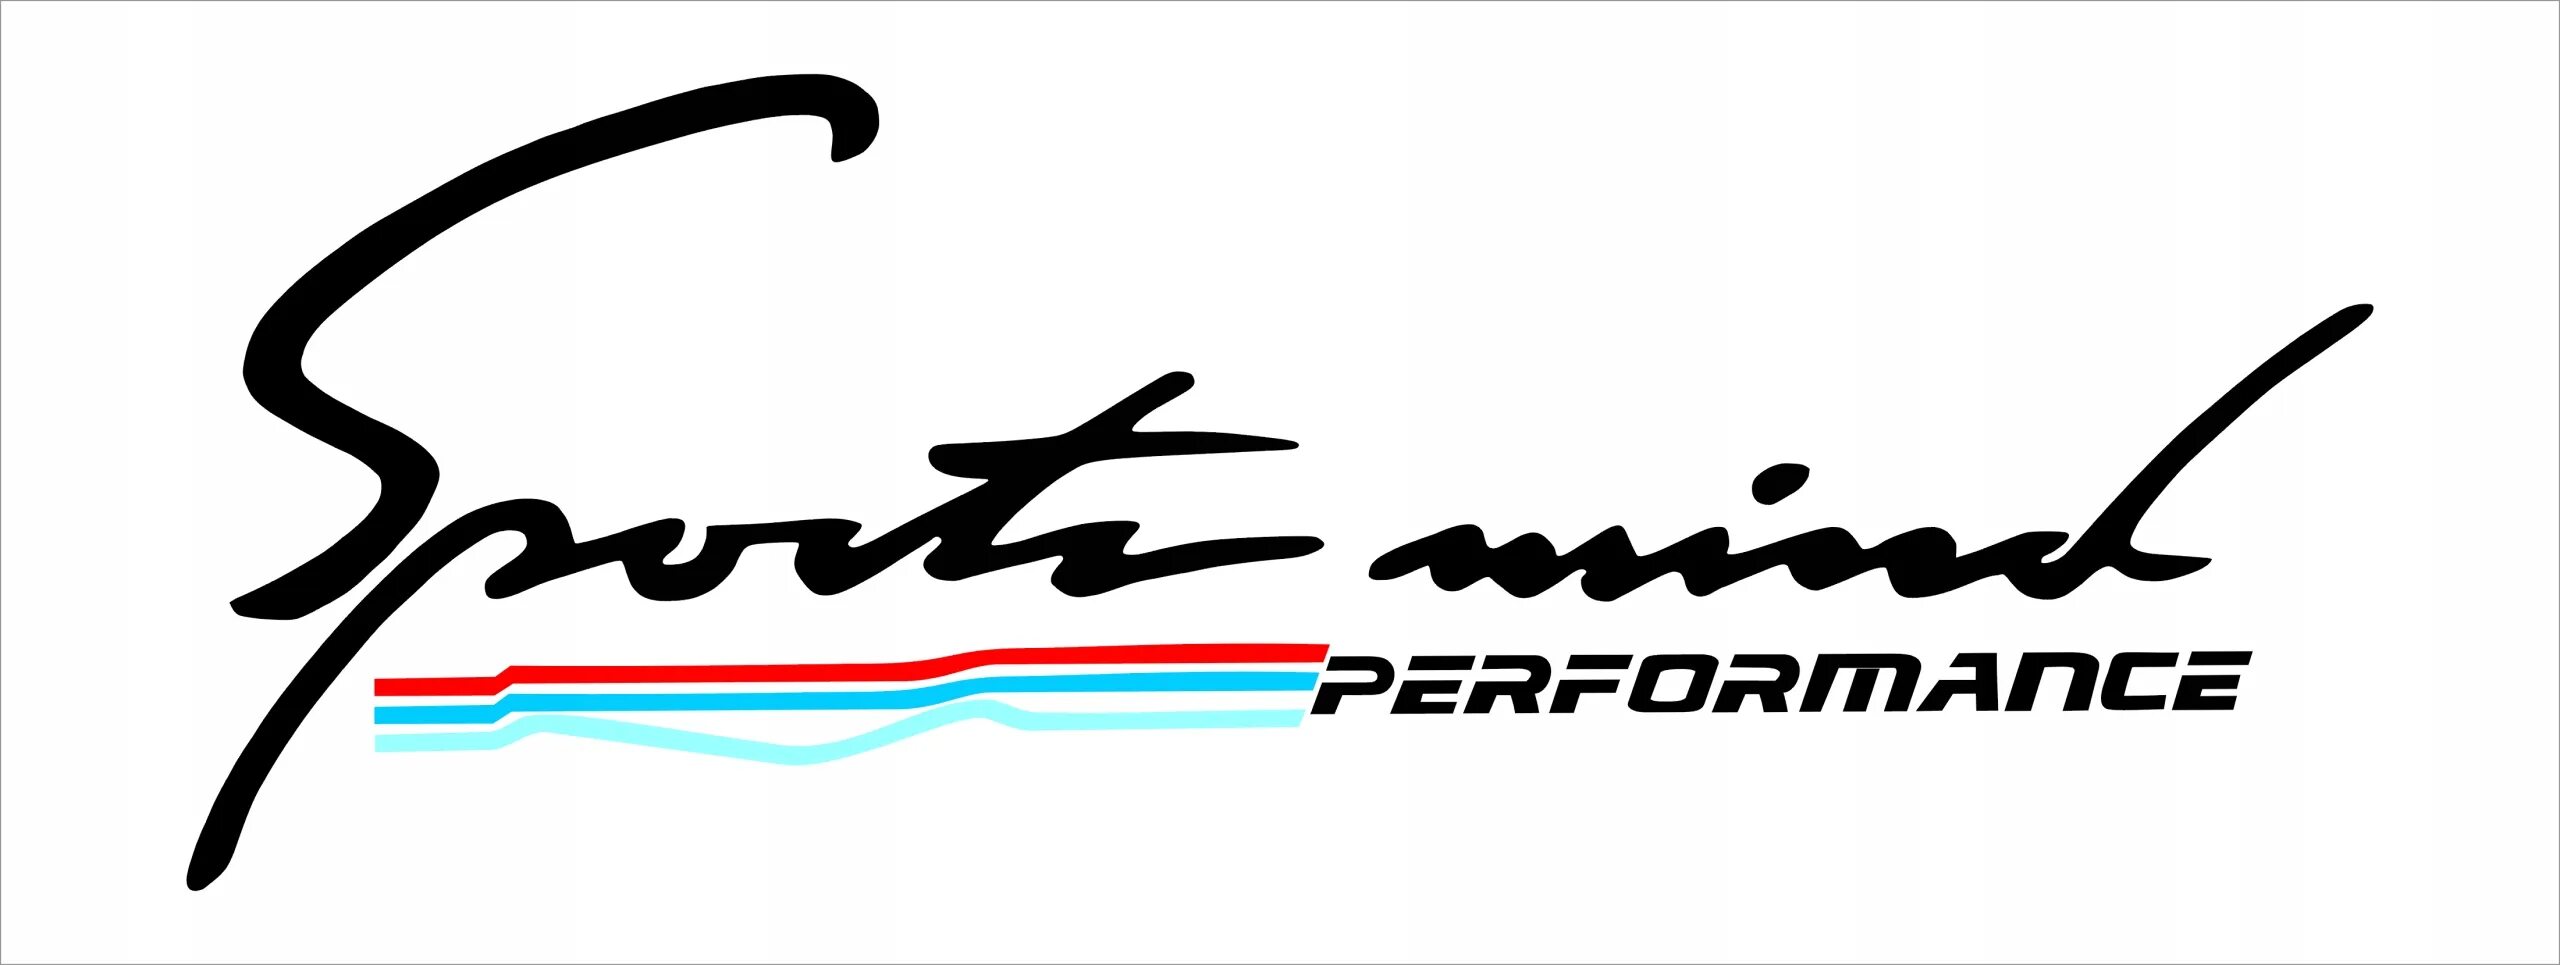 БМВ со спортивными наклейками. M Performance наклейка. Наклейка Nurburgring Performance BMW. Sports Mind Performance наклейка.